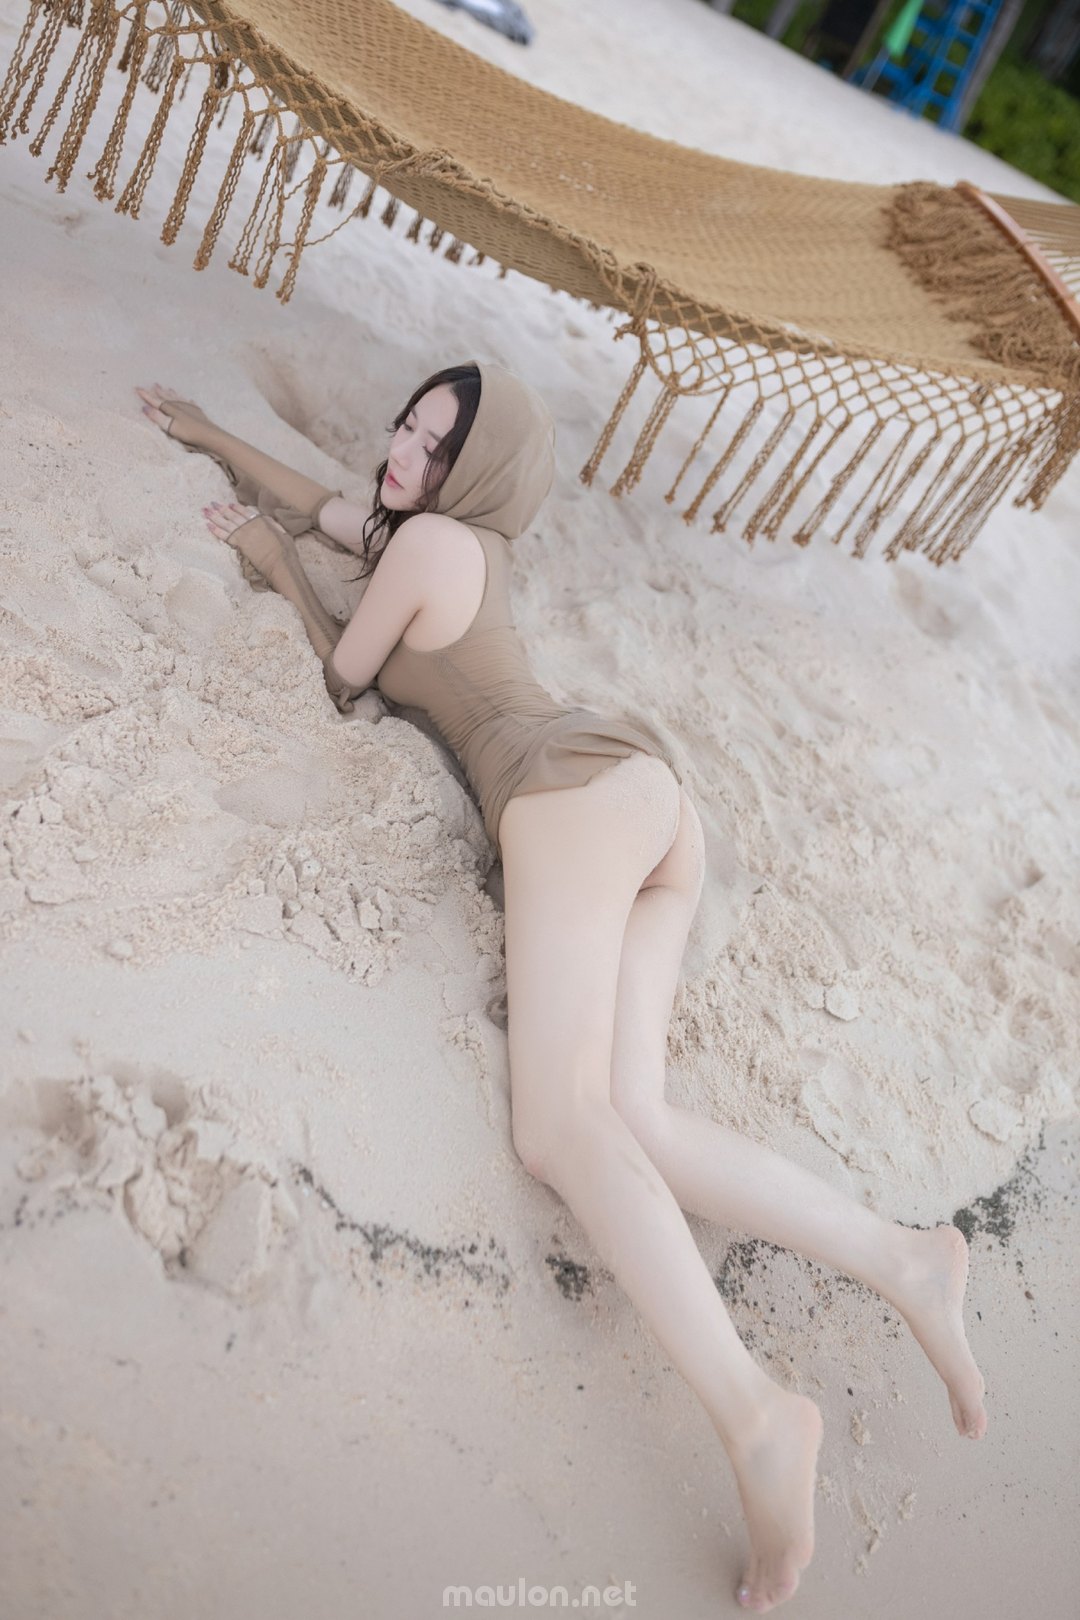 Maulon.Net - Ảnh sex gái xinh quỳ trên bãi cát